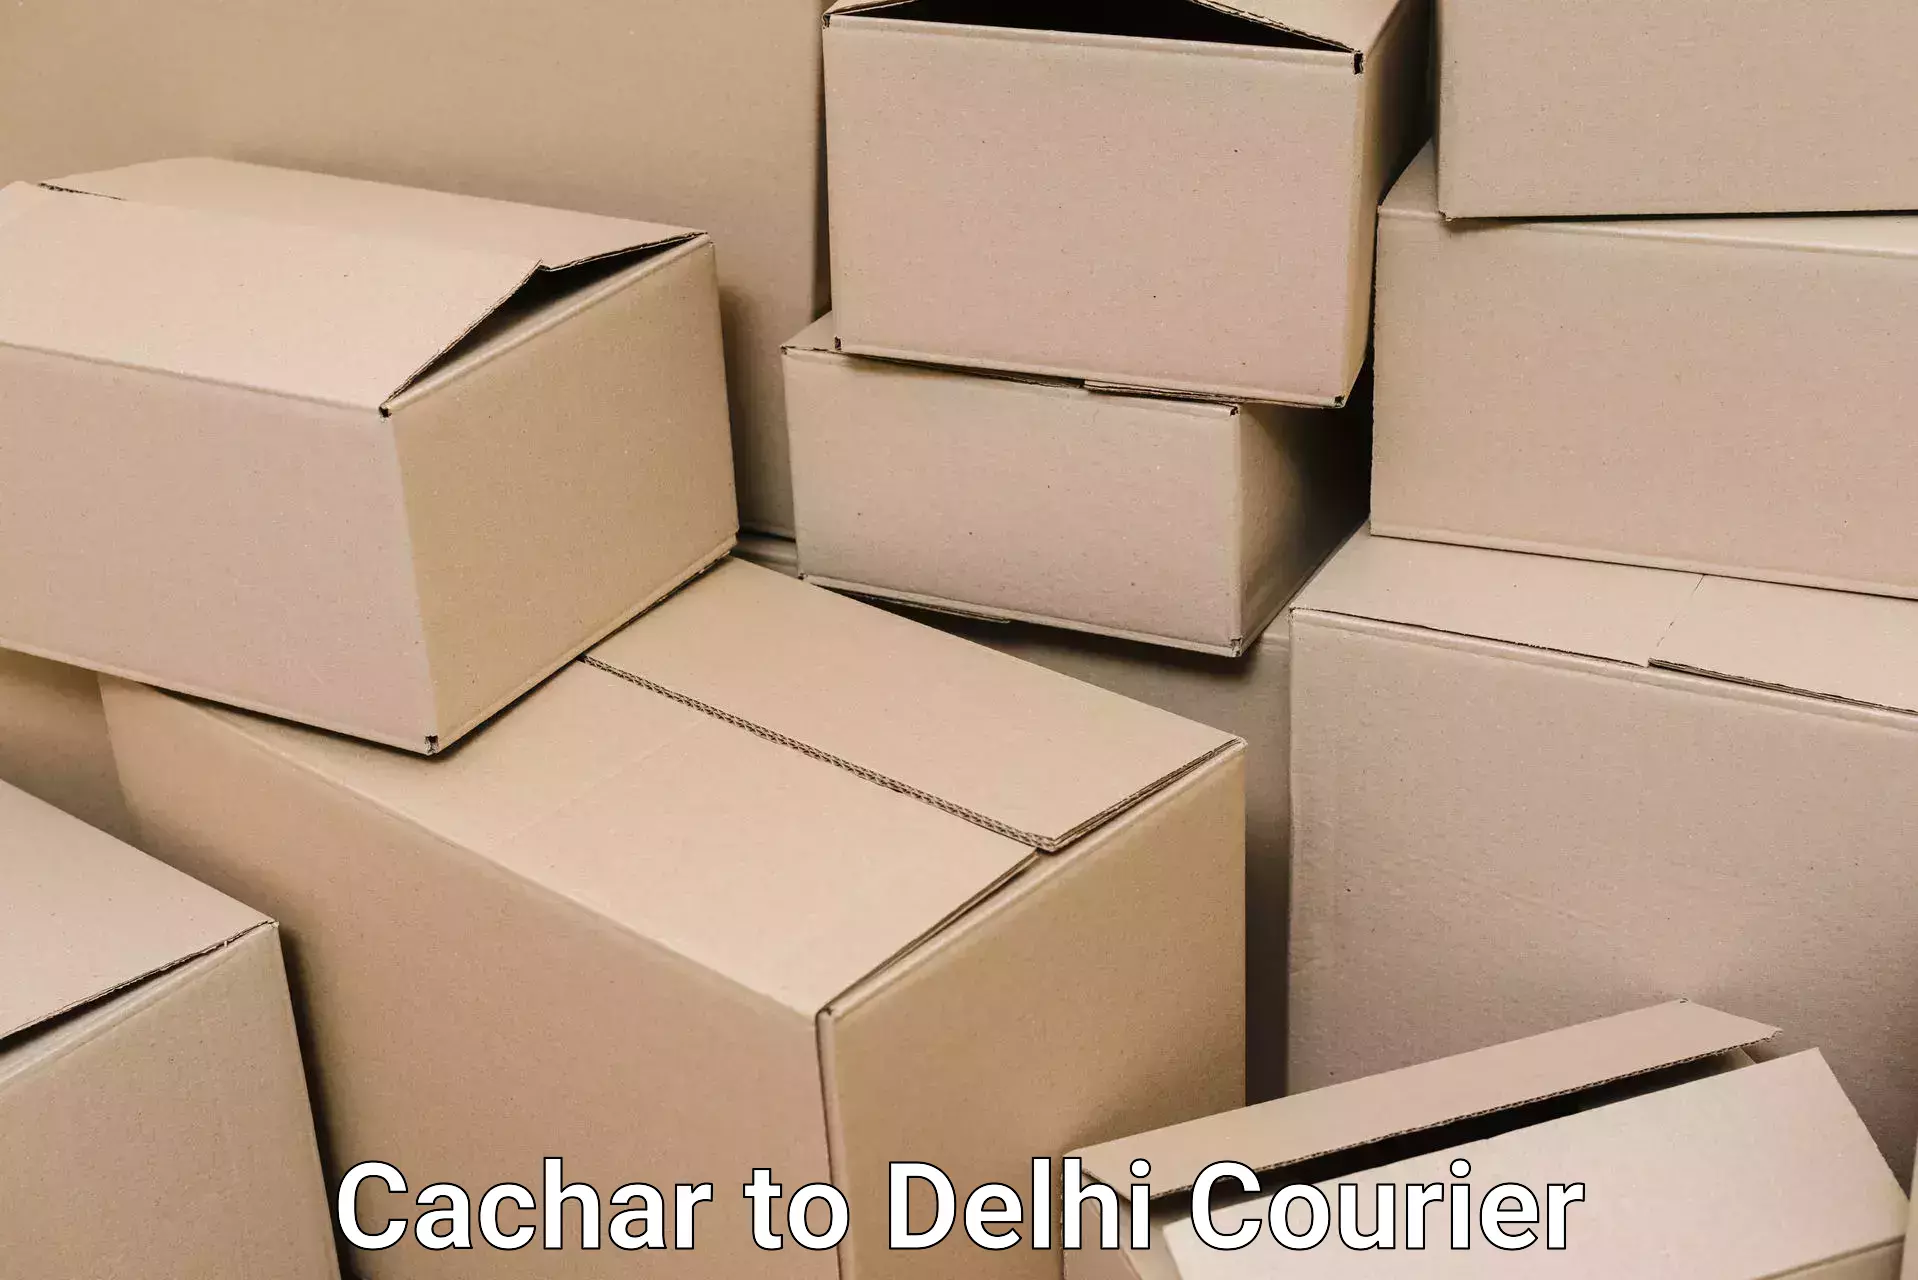 Online household goods transport Cachar to Delhi